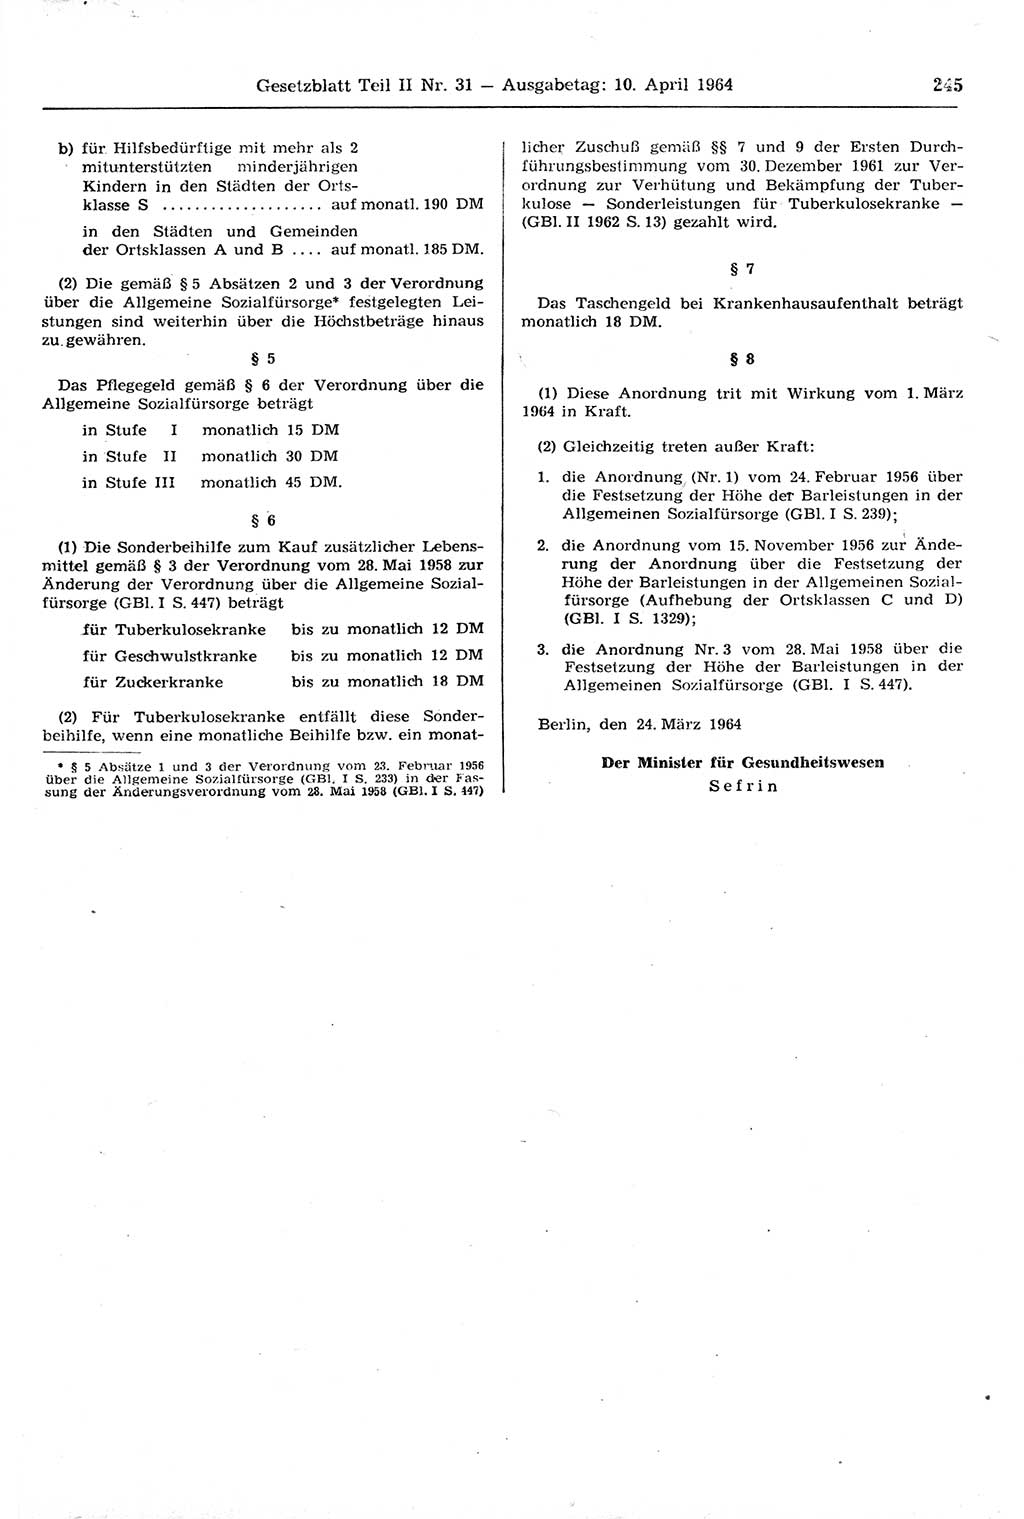 Gesetzblatt (GBl.) der Deutschen Demokratischen Republik (DDR) Teil ⅠⅠ 1964, Seite 245 (GBl. DDR ⅠⅠ 1964, S. 245)